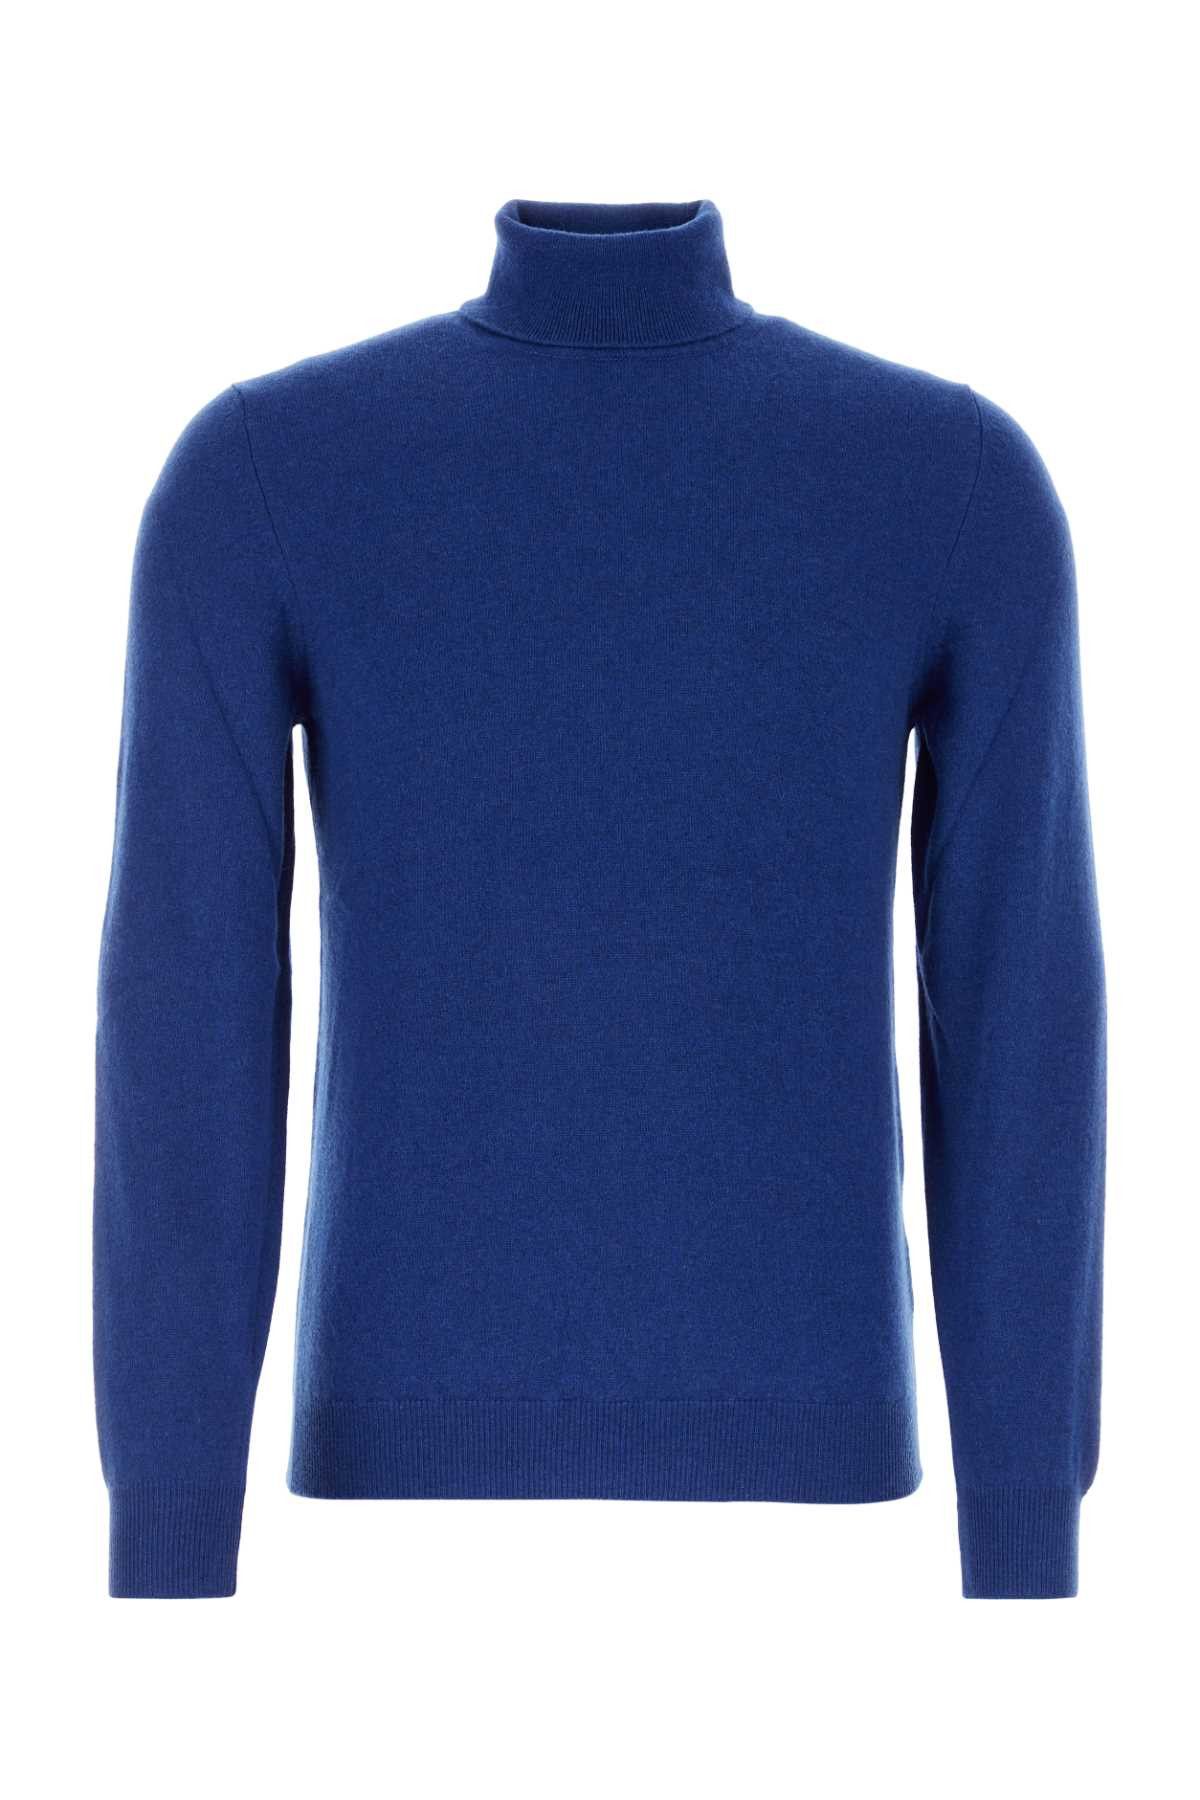 Fedeli Blue Cashmere Sweater | Grailed